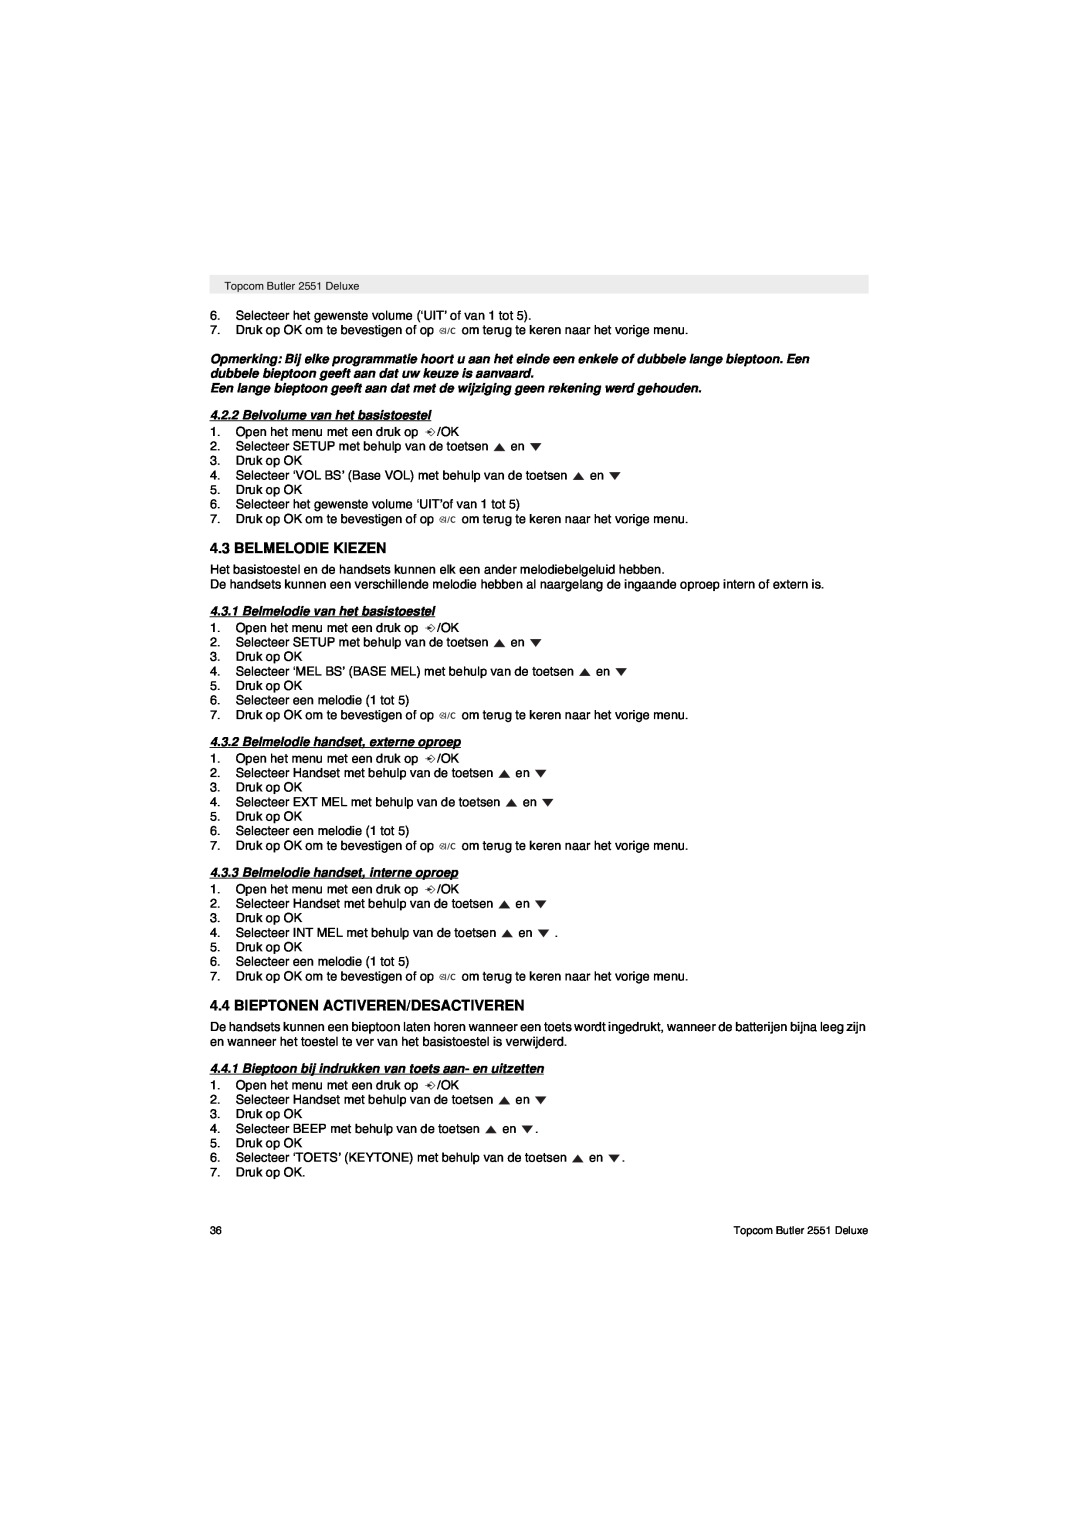 Topcom 2551 manual Belmelodie Kiezen, Bieptonen Activeren/Desactiveren, Belvolume van het basistoestel 